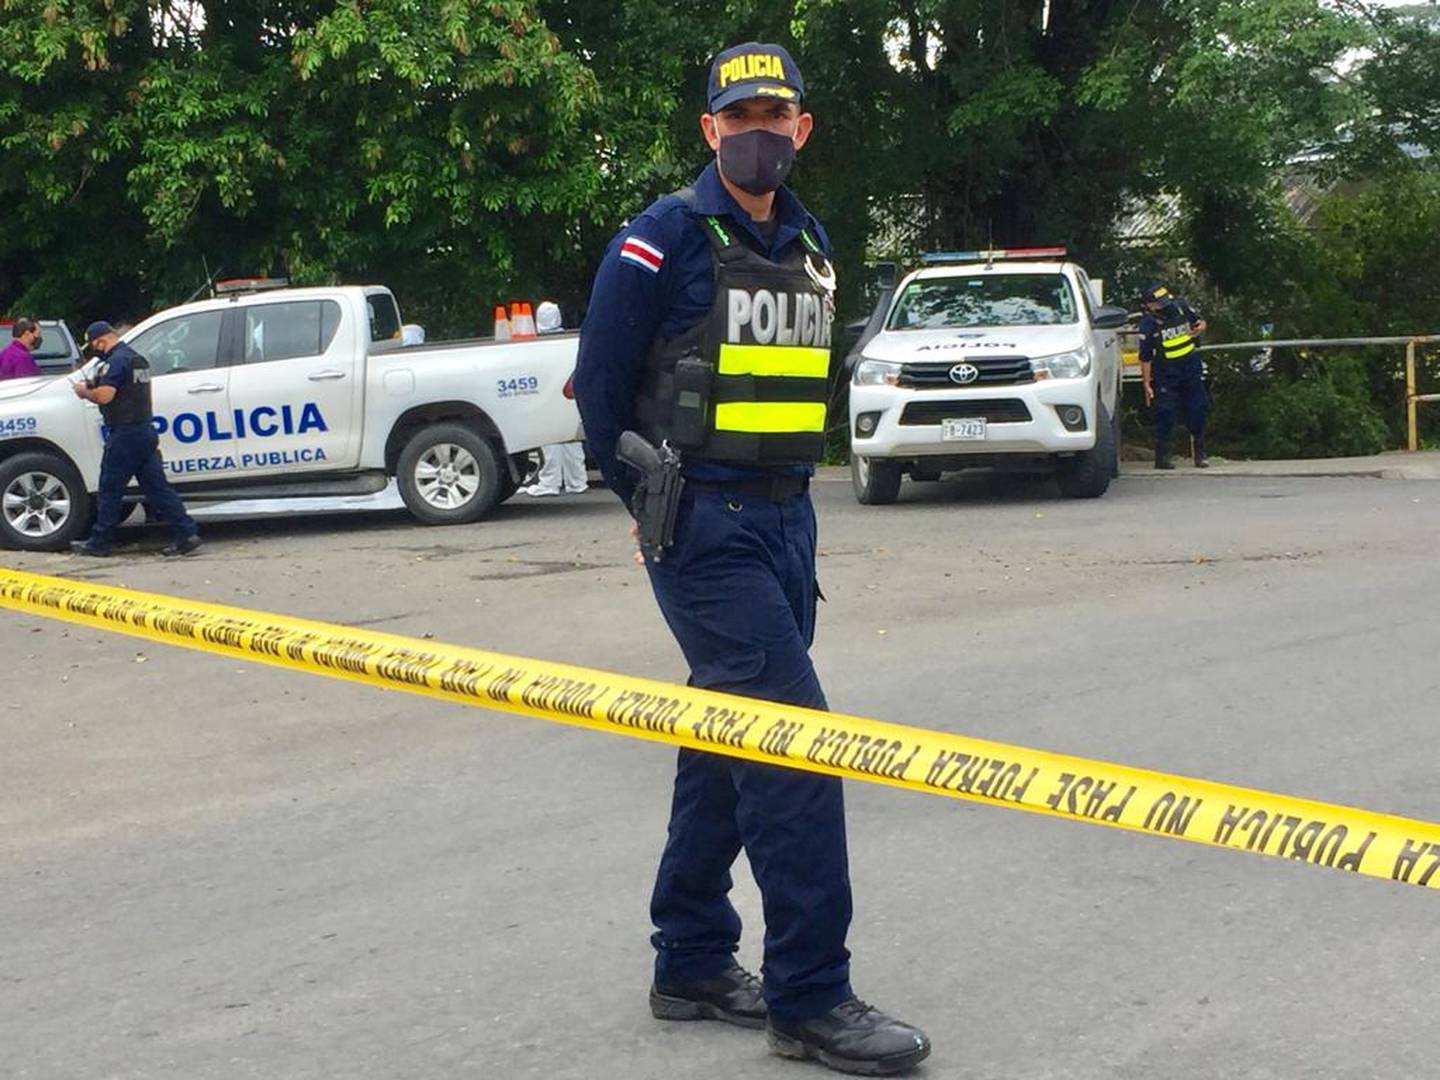 La Fuerza Pública acordonó la escena del tiroteo, mientras que agentes del OIJ procedían con la recolección de indicios y el levantamiento del cuerpo Foto: Raúl Cascante.